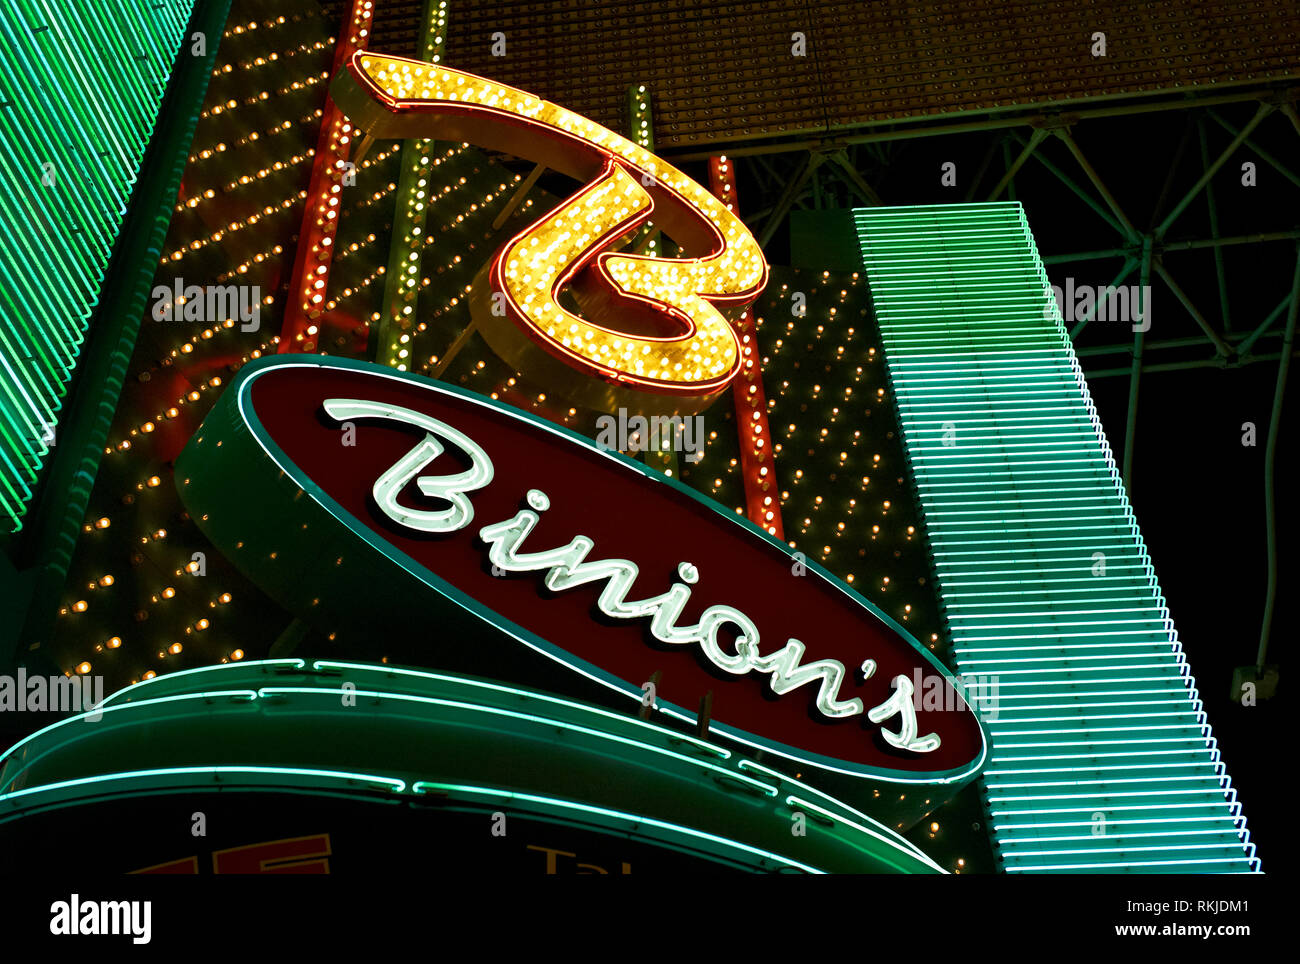 Las Vegas, Nevada - 06.Juli 2009: Das Neonschild beleuchtet über dem Eingang des Binion's Horseshoe Casino in der weltberühmten Freemont Street. Stockfoto